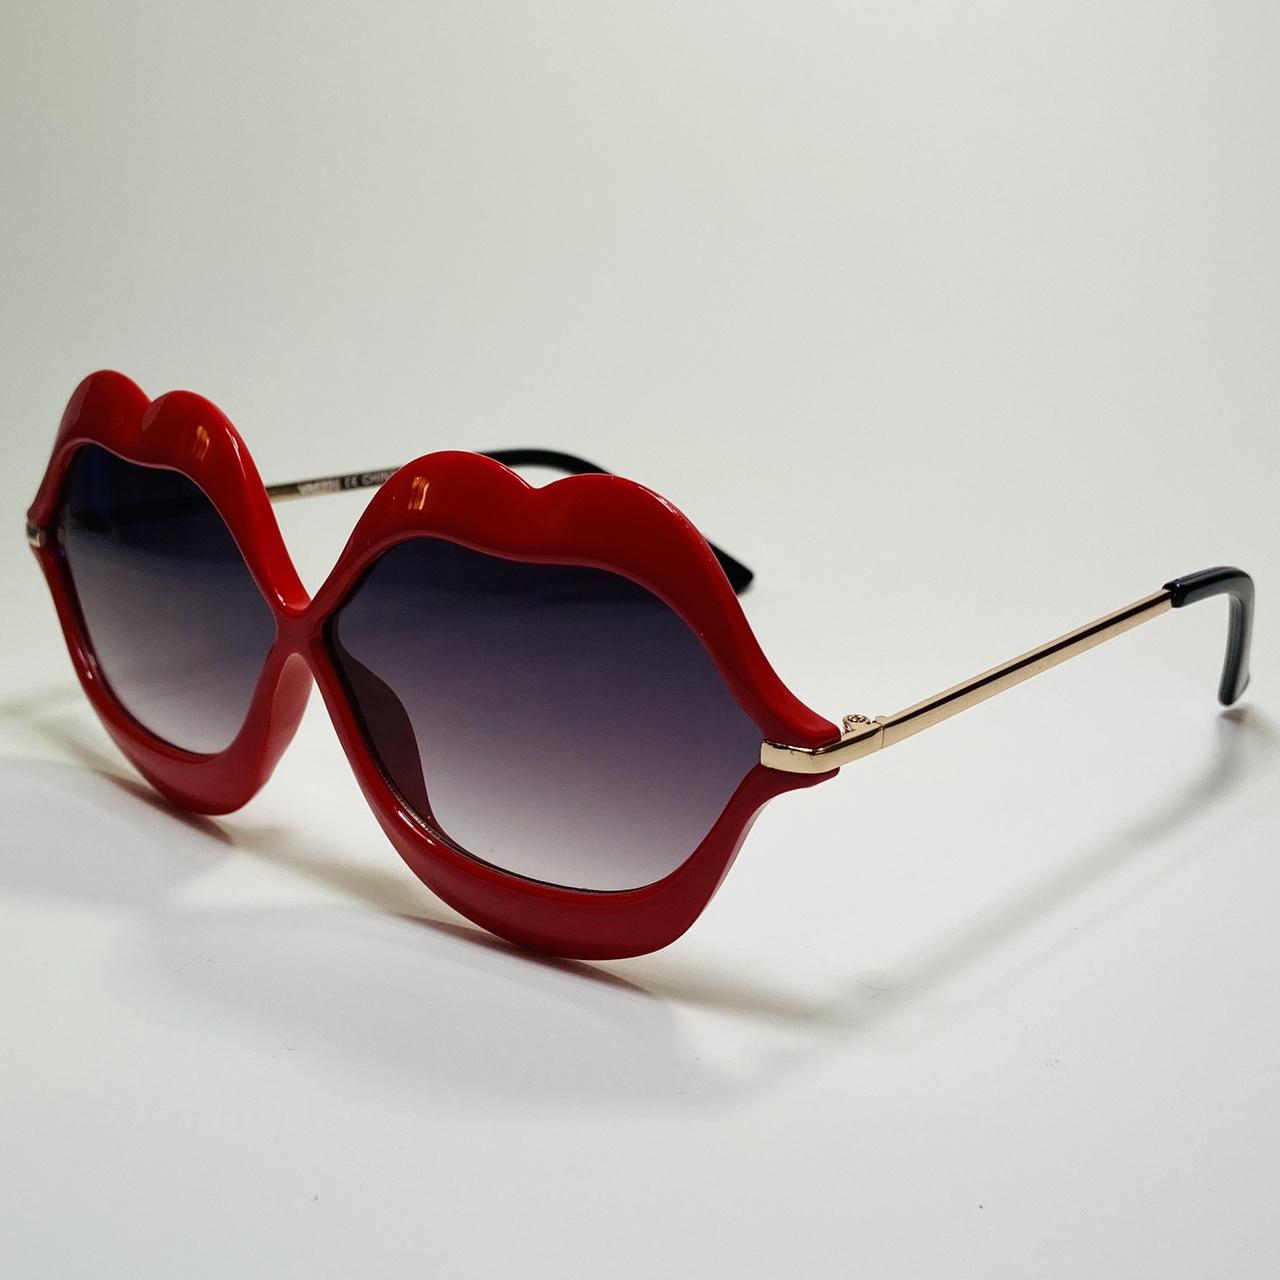 Women's Red Sunglasses (3)